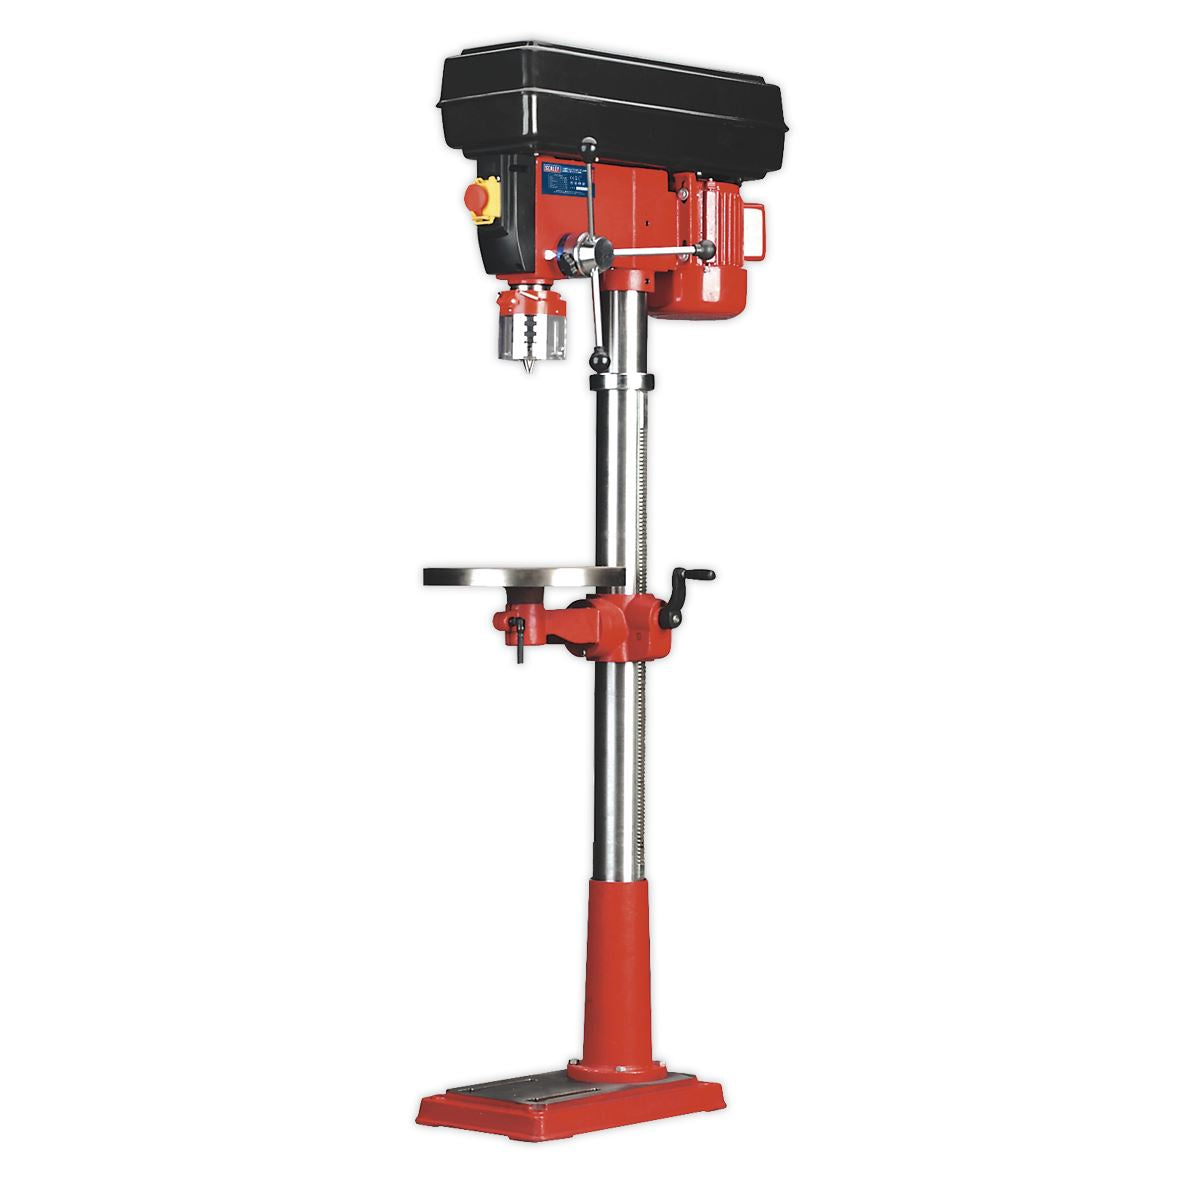 Sealey Pillar Drill Floor Variable Speed 1630mm Height 650W/230V